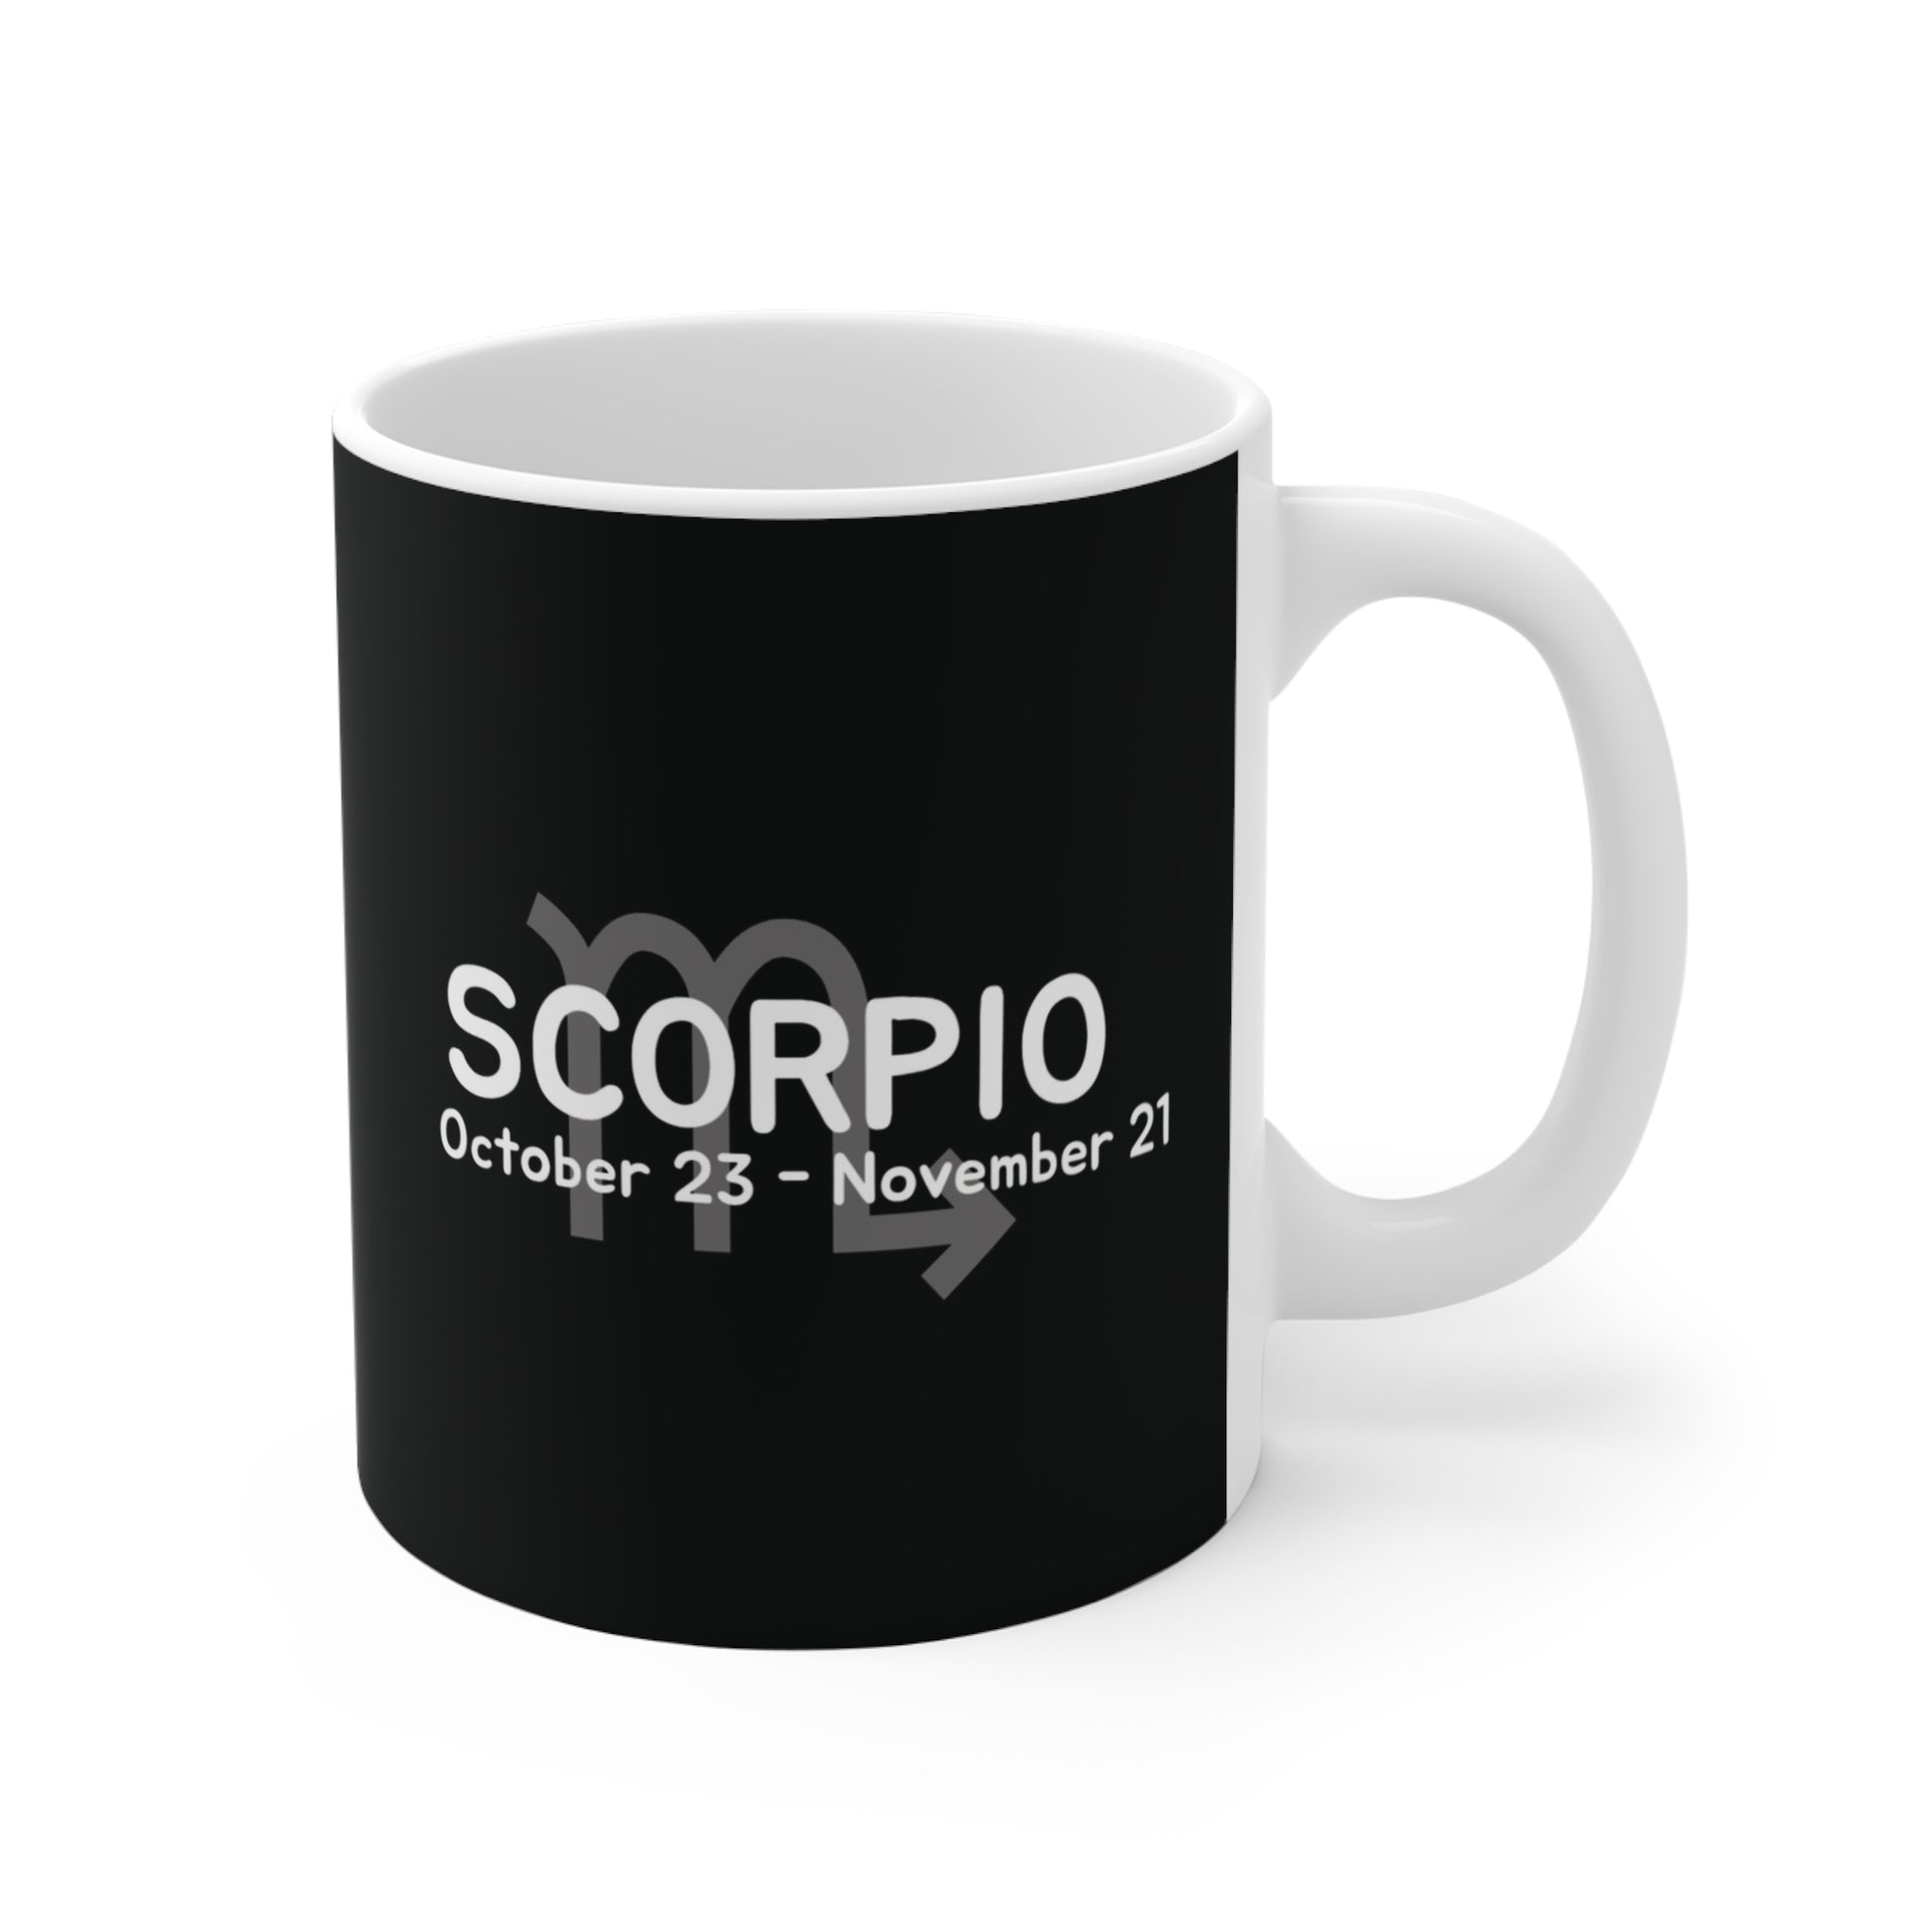 Scorpio - etzart